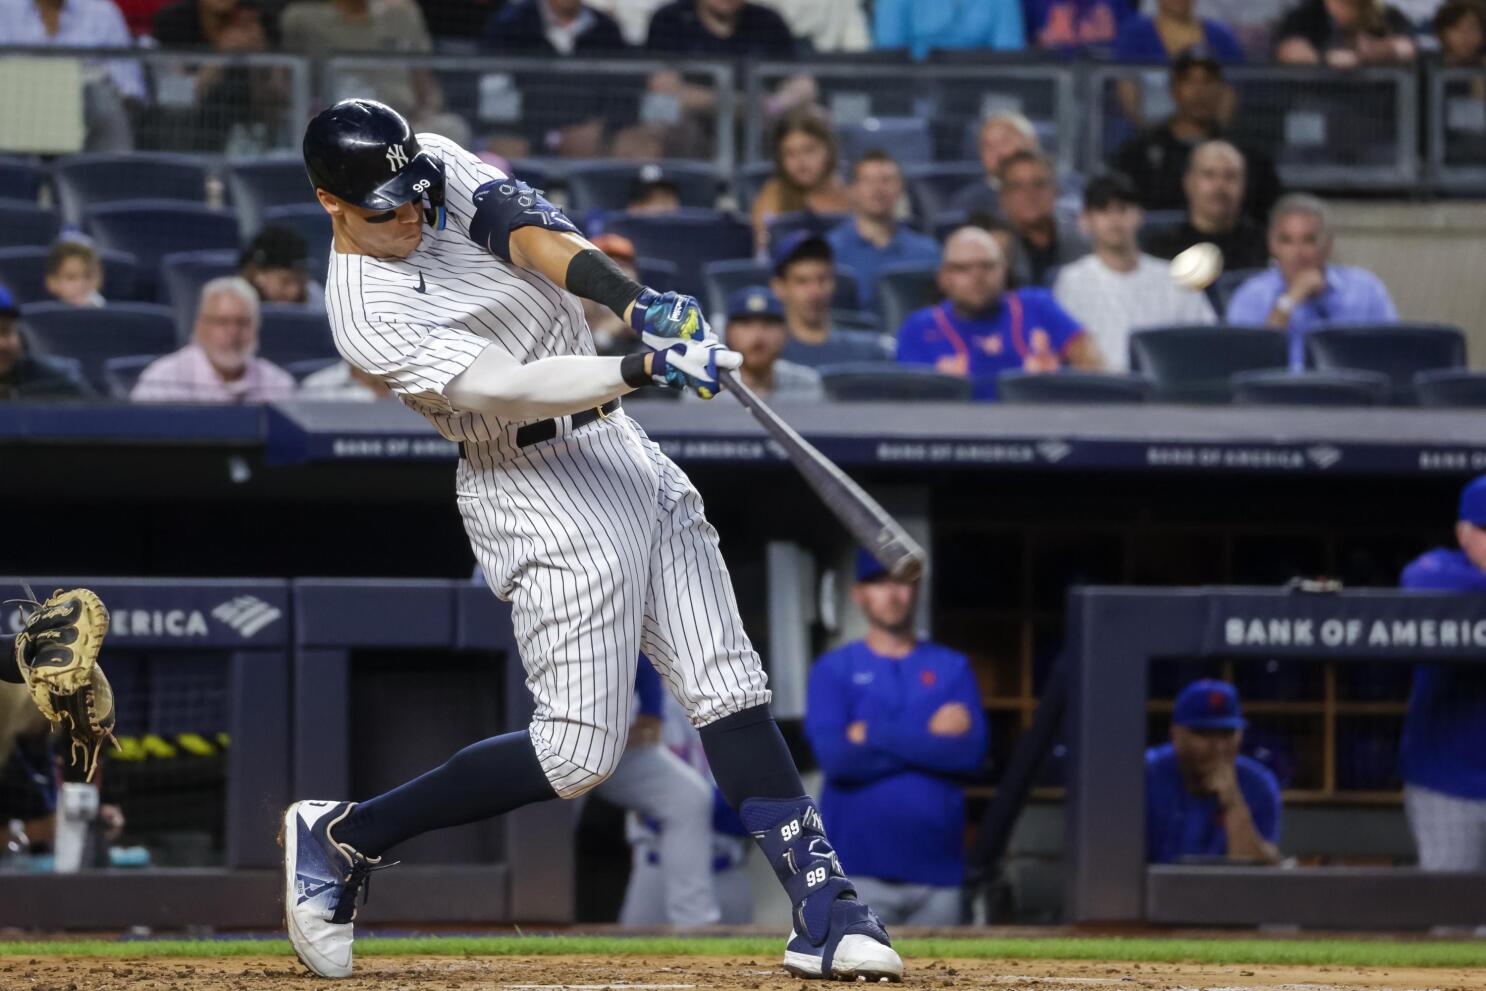 Judge homers again as Yankees sweep Mets in Subway Series